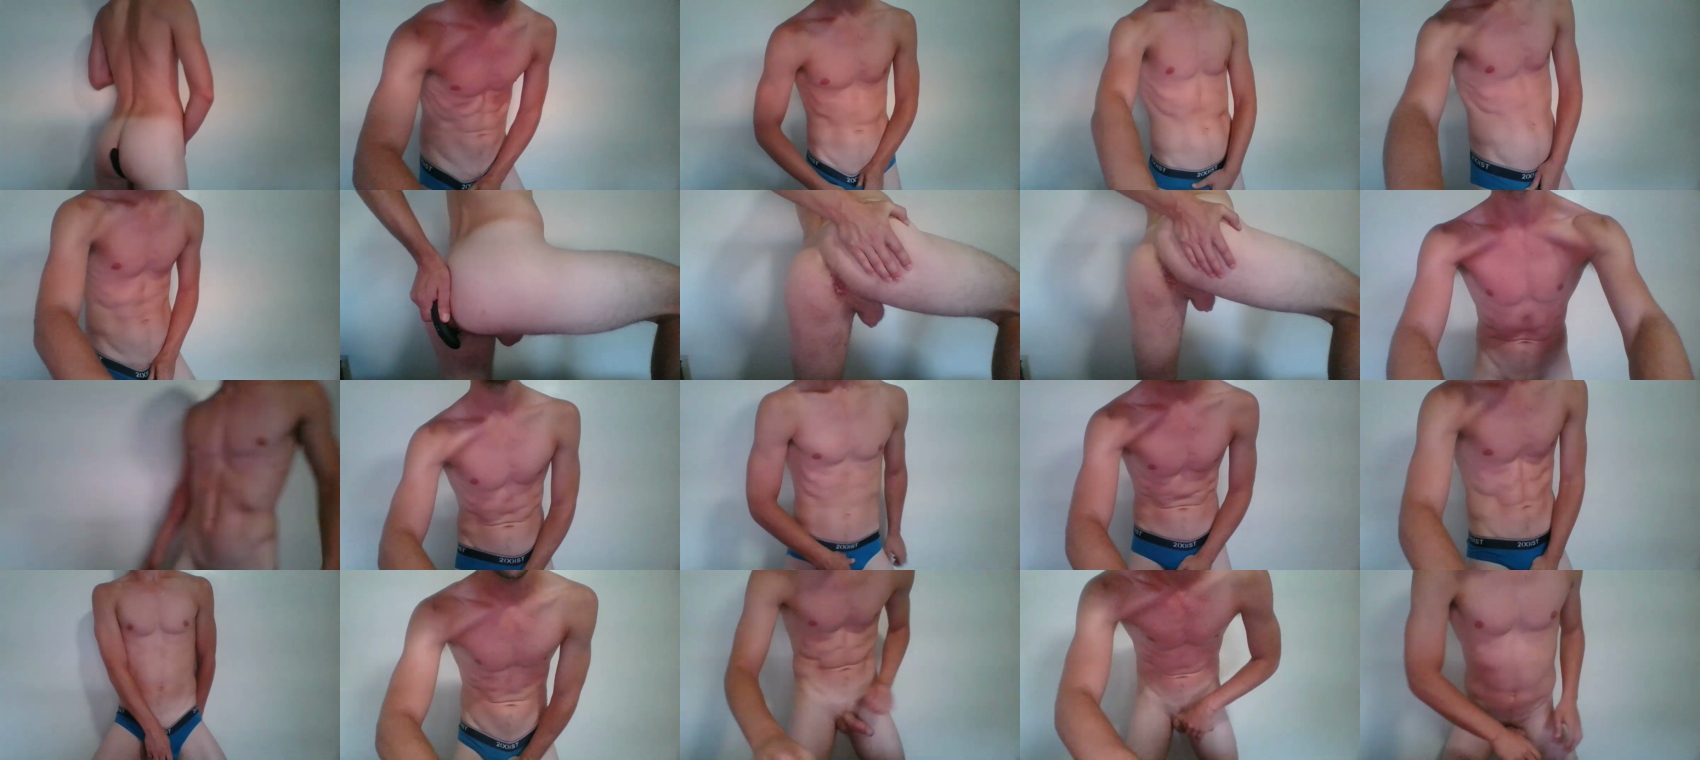 dancantstand88  14-07-2022 Males Topless